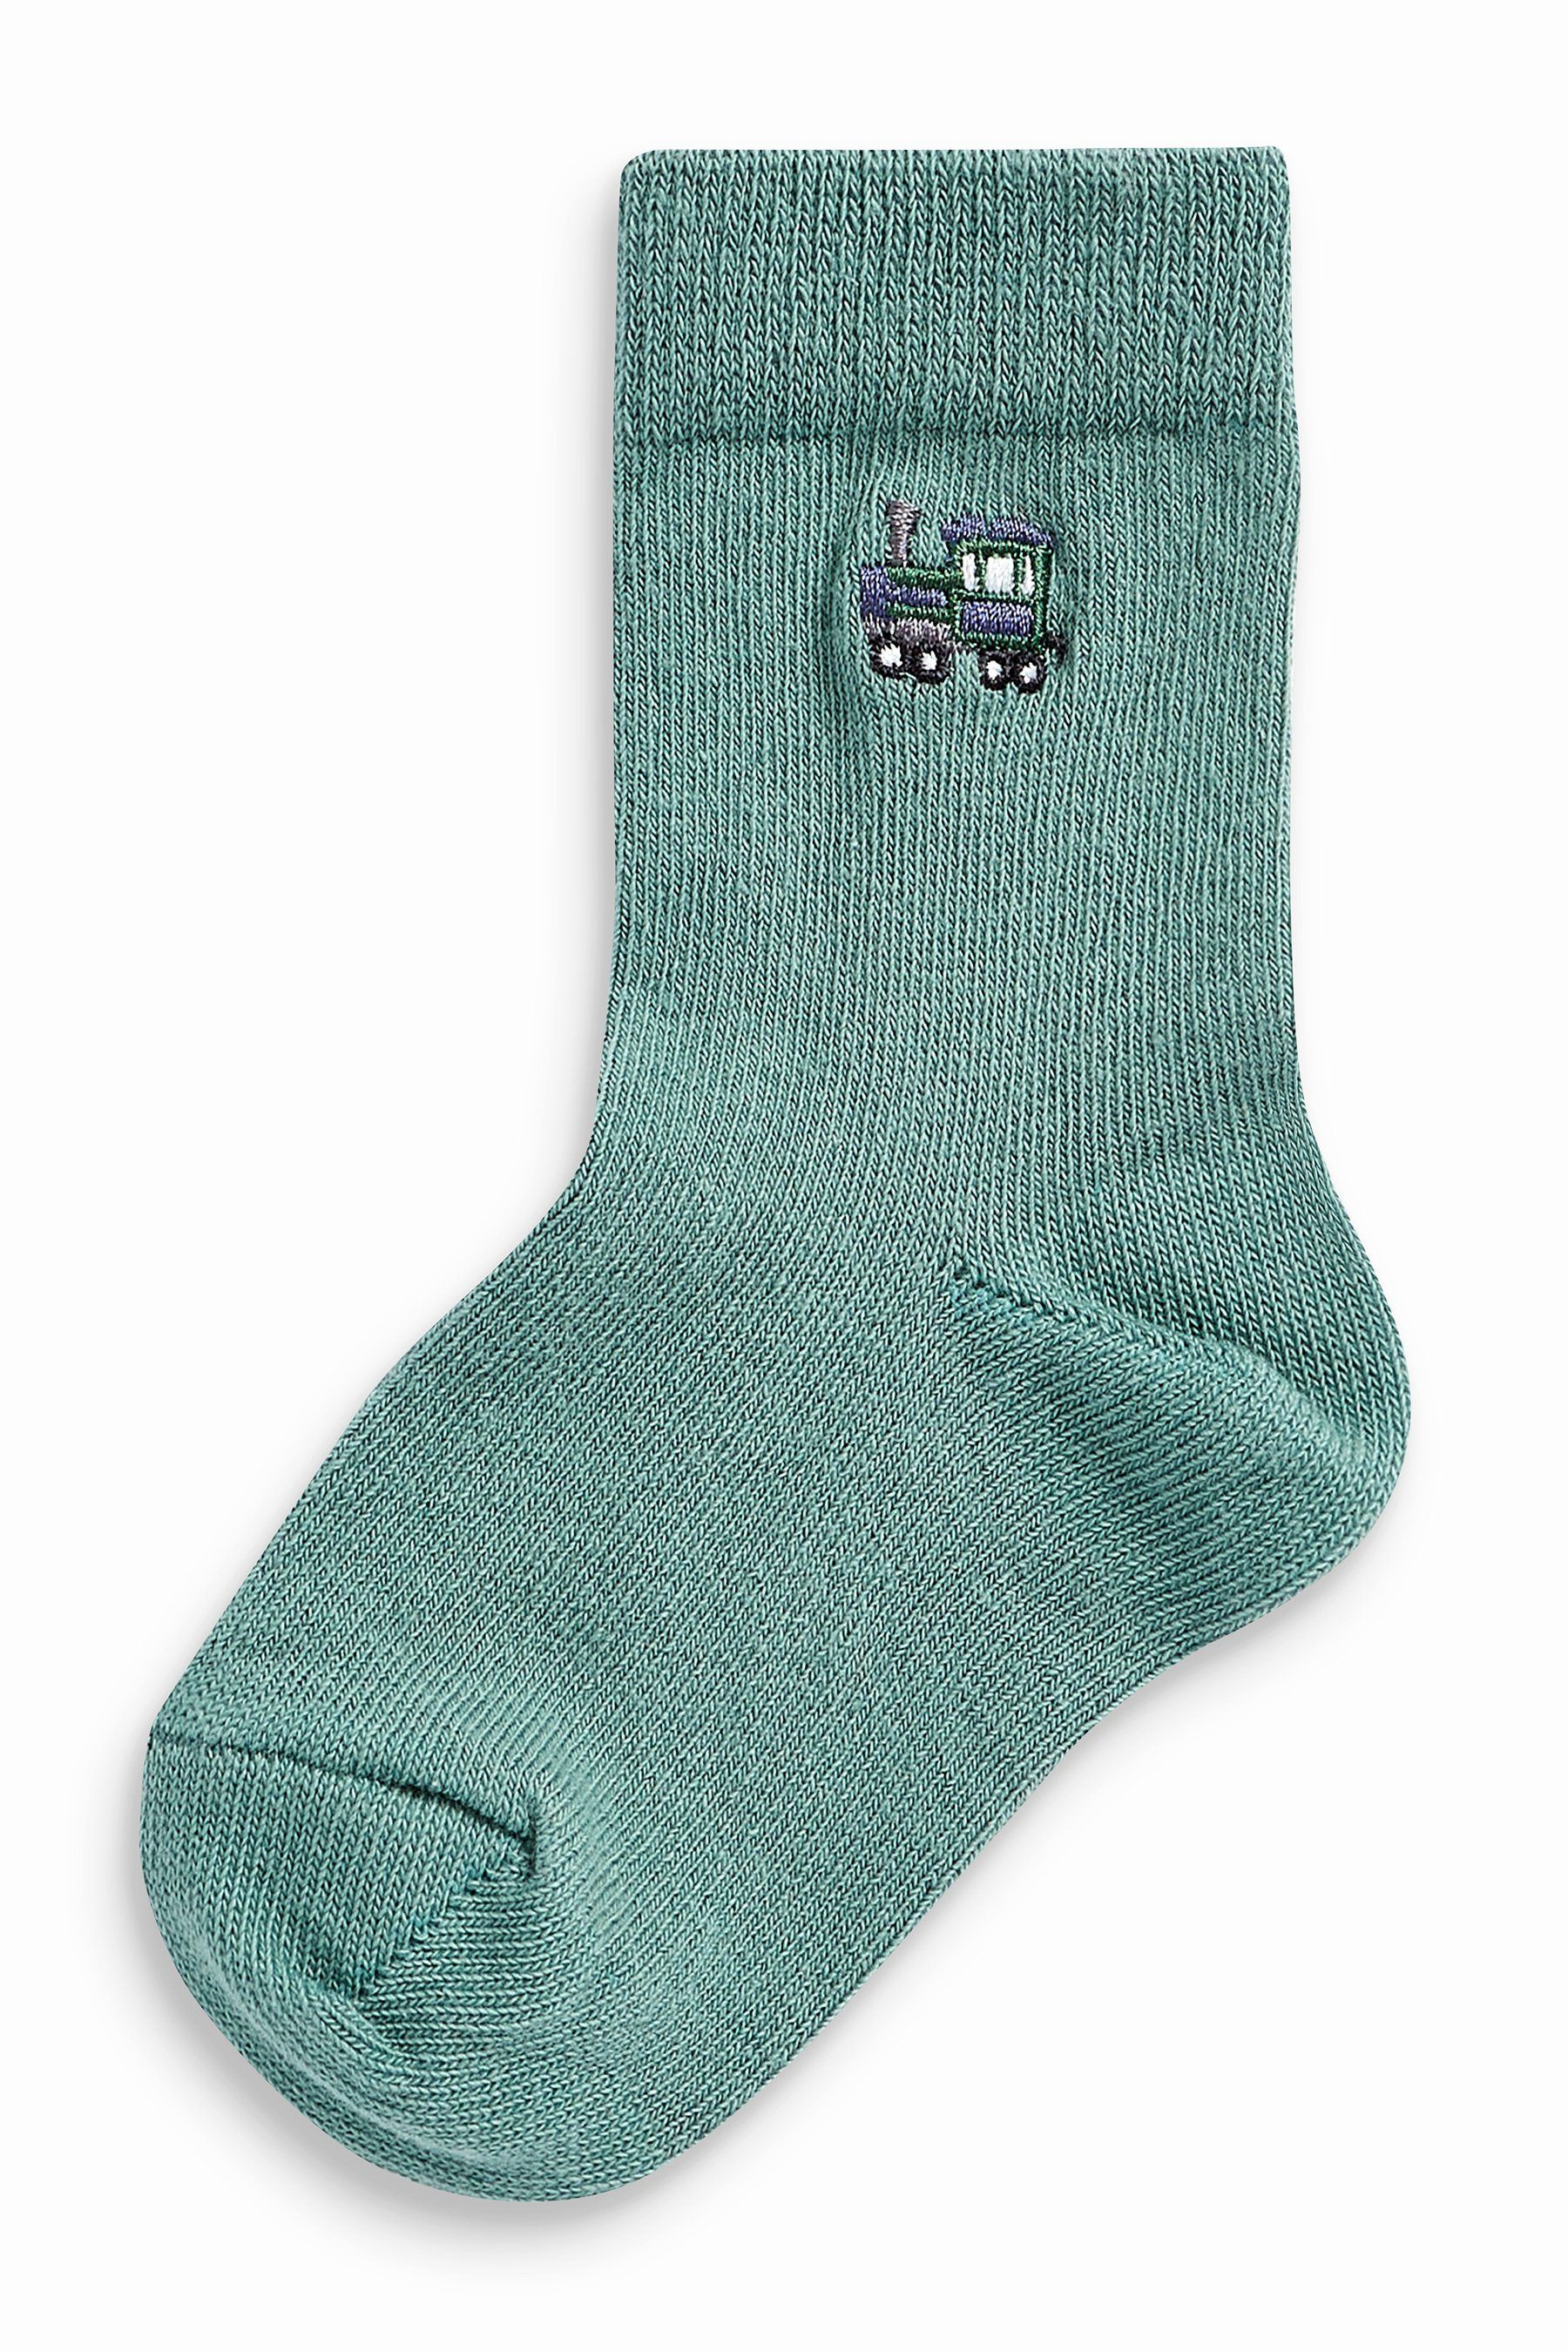 Socken Next Baumwollanteil, mit Character (1-Paar) hohem Kurzsocken 7er-Pack Mineral